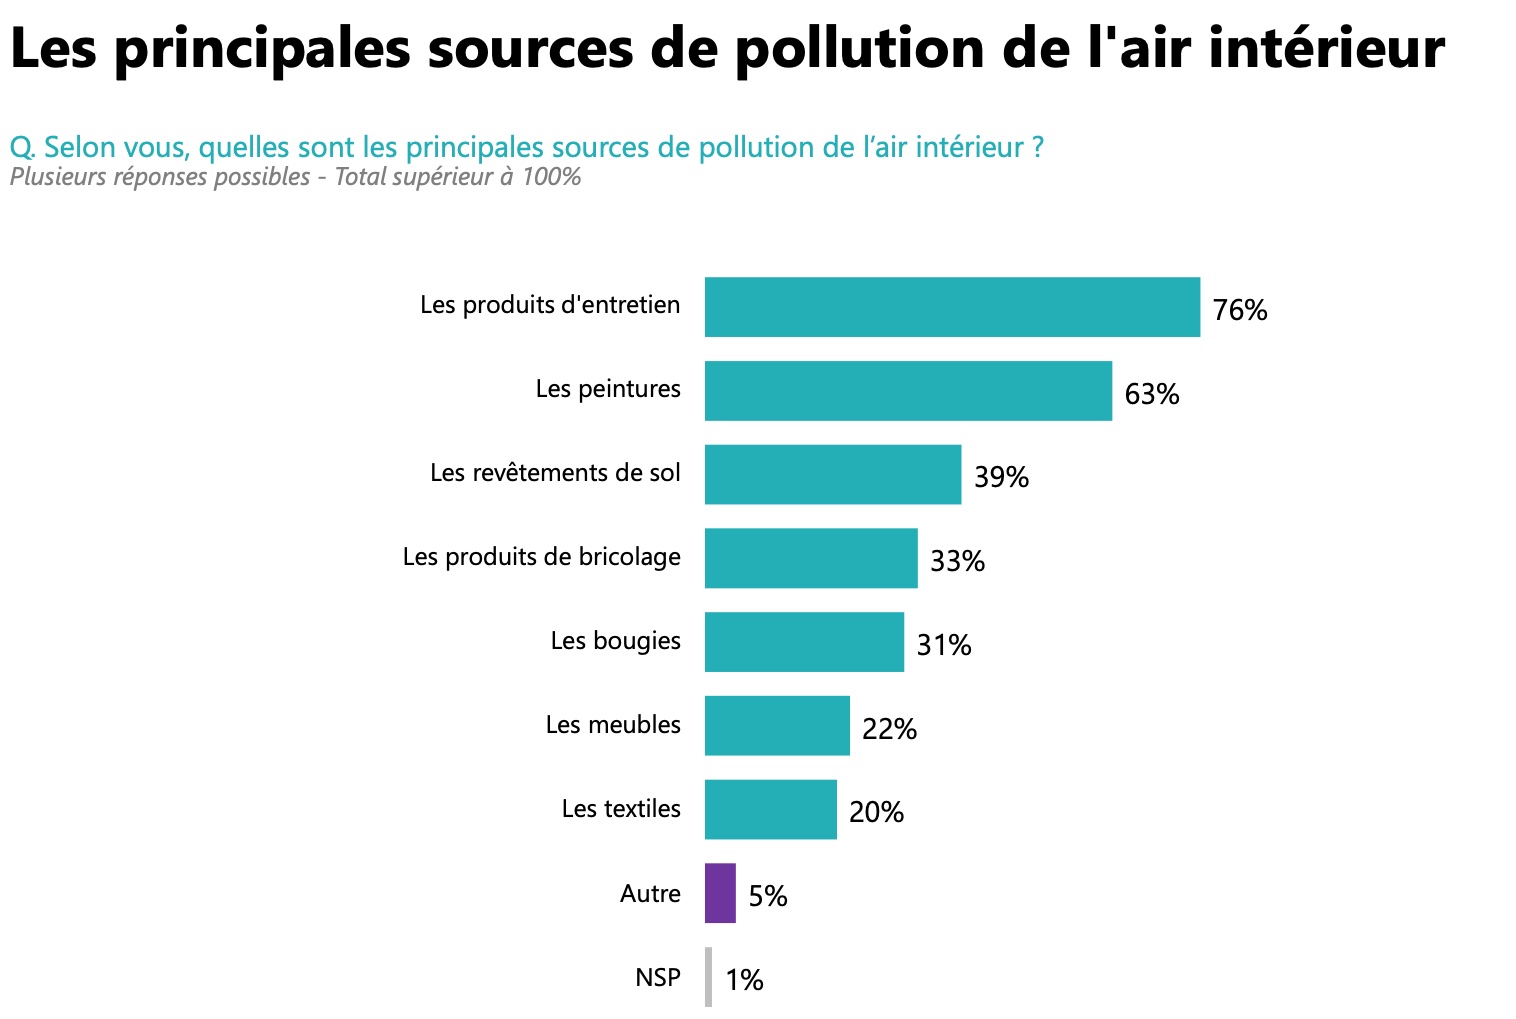 Les principales sources de pollution de l'air intérieur - Source : Evertree/Opinion Way